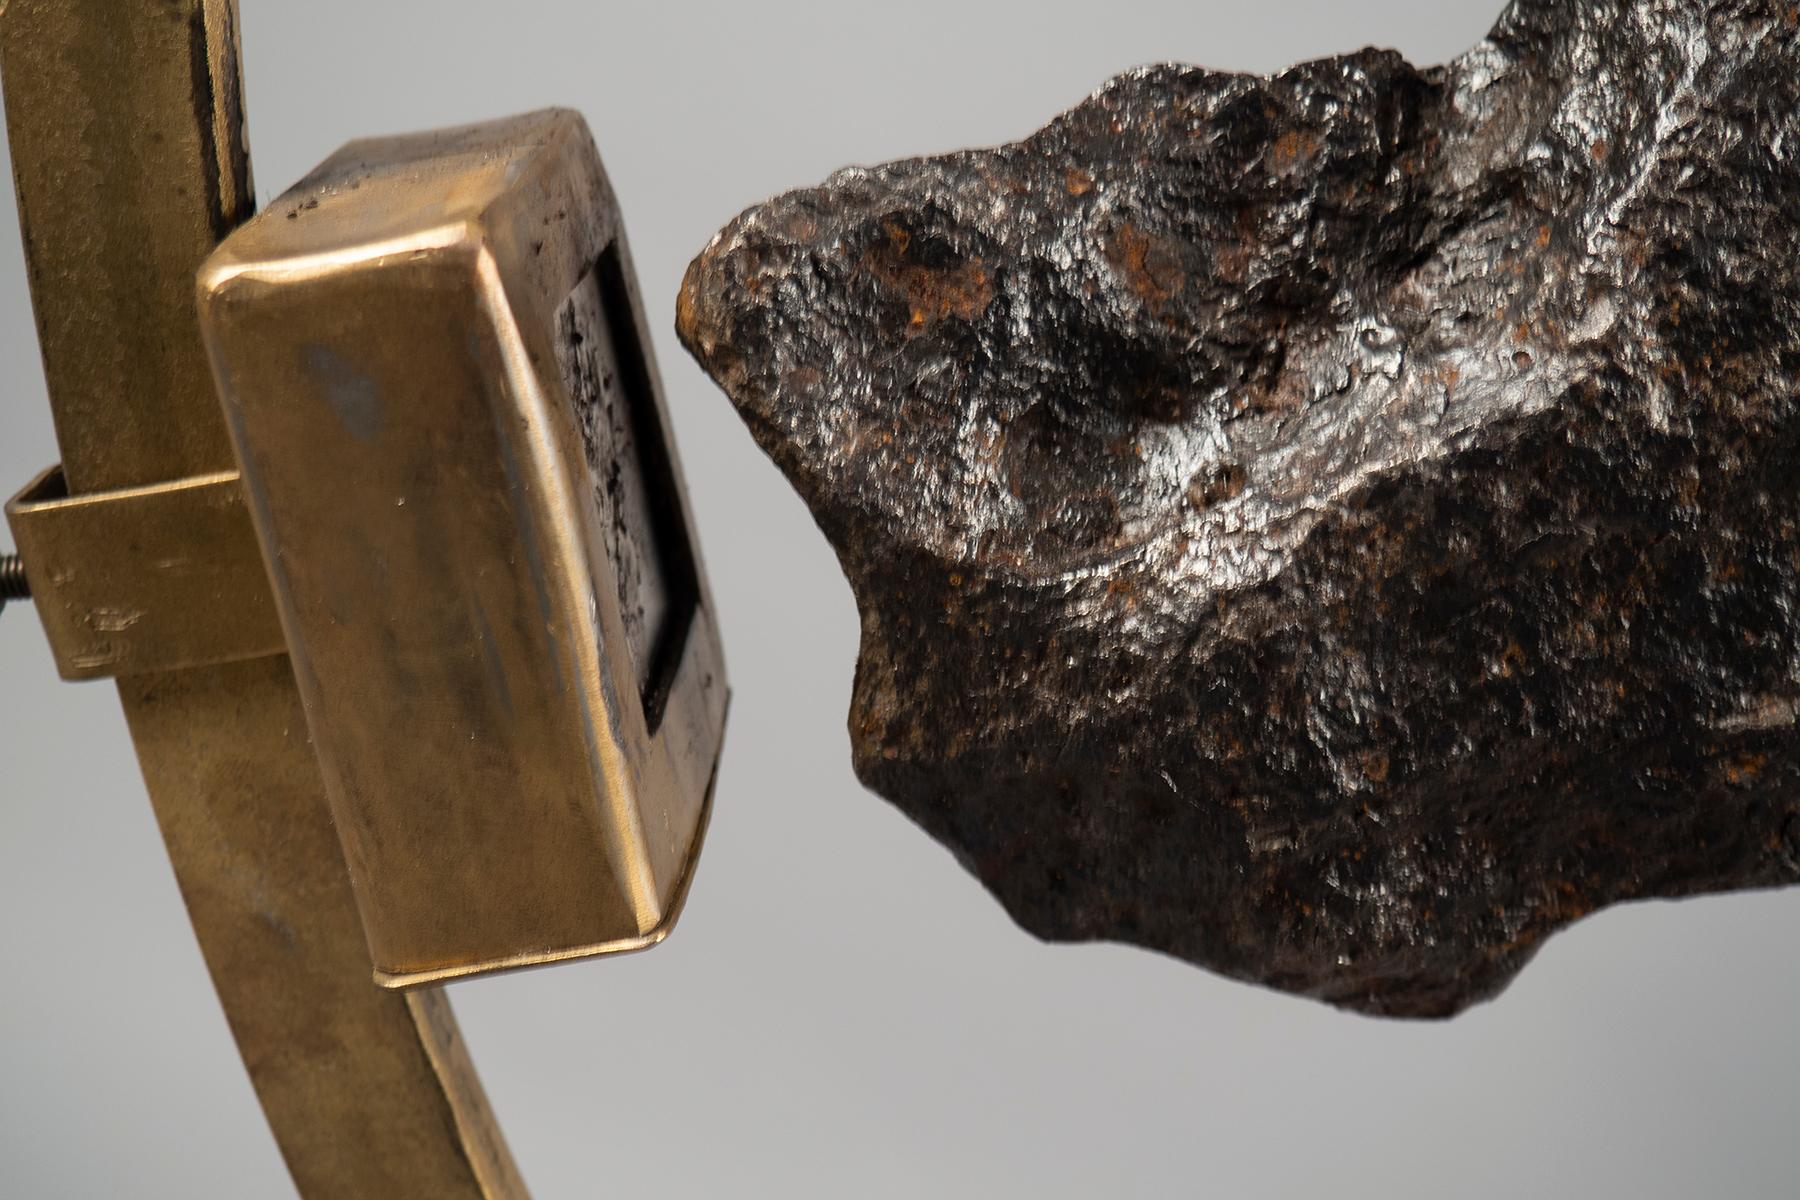 Grande structure en laiton de 3/4 de cercle contenant un fragment de météorite (5 kg) provenant de Campo del Cielo, Argentine. La météorite est maintenue en place par un puissant aimant en terres rares monté sur la structure. La base est une boîte